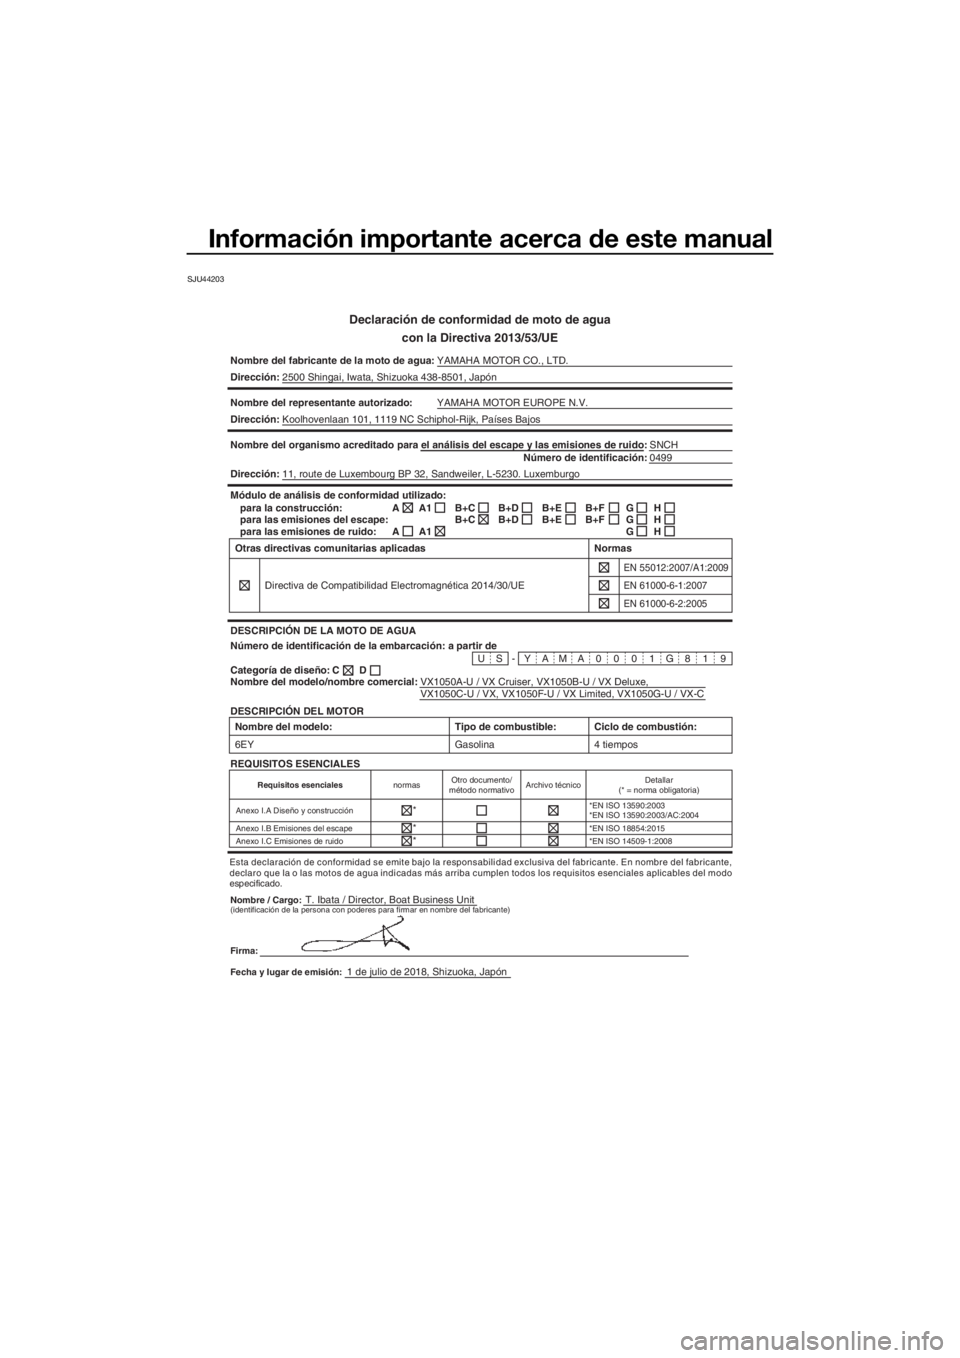 YAMAHA VX 2019  Manuale de Empleo (in Spanish) Información importante acerca de este manual
SJU44203
Declaración de conformidad de moto de agua
con la Directiva 2013/53/UE
Nombre del fabricante de la moto de agua:YAMAHA MOTOR CO., LTD.
Direcció